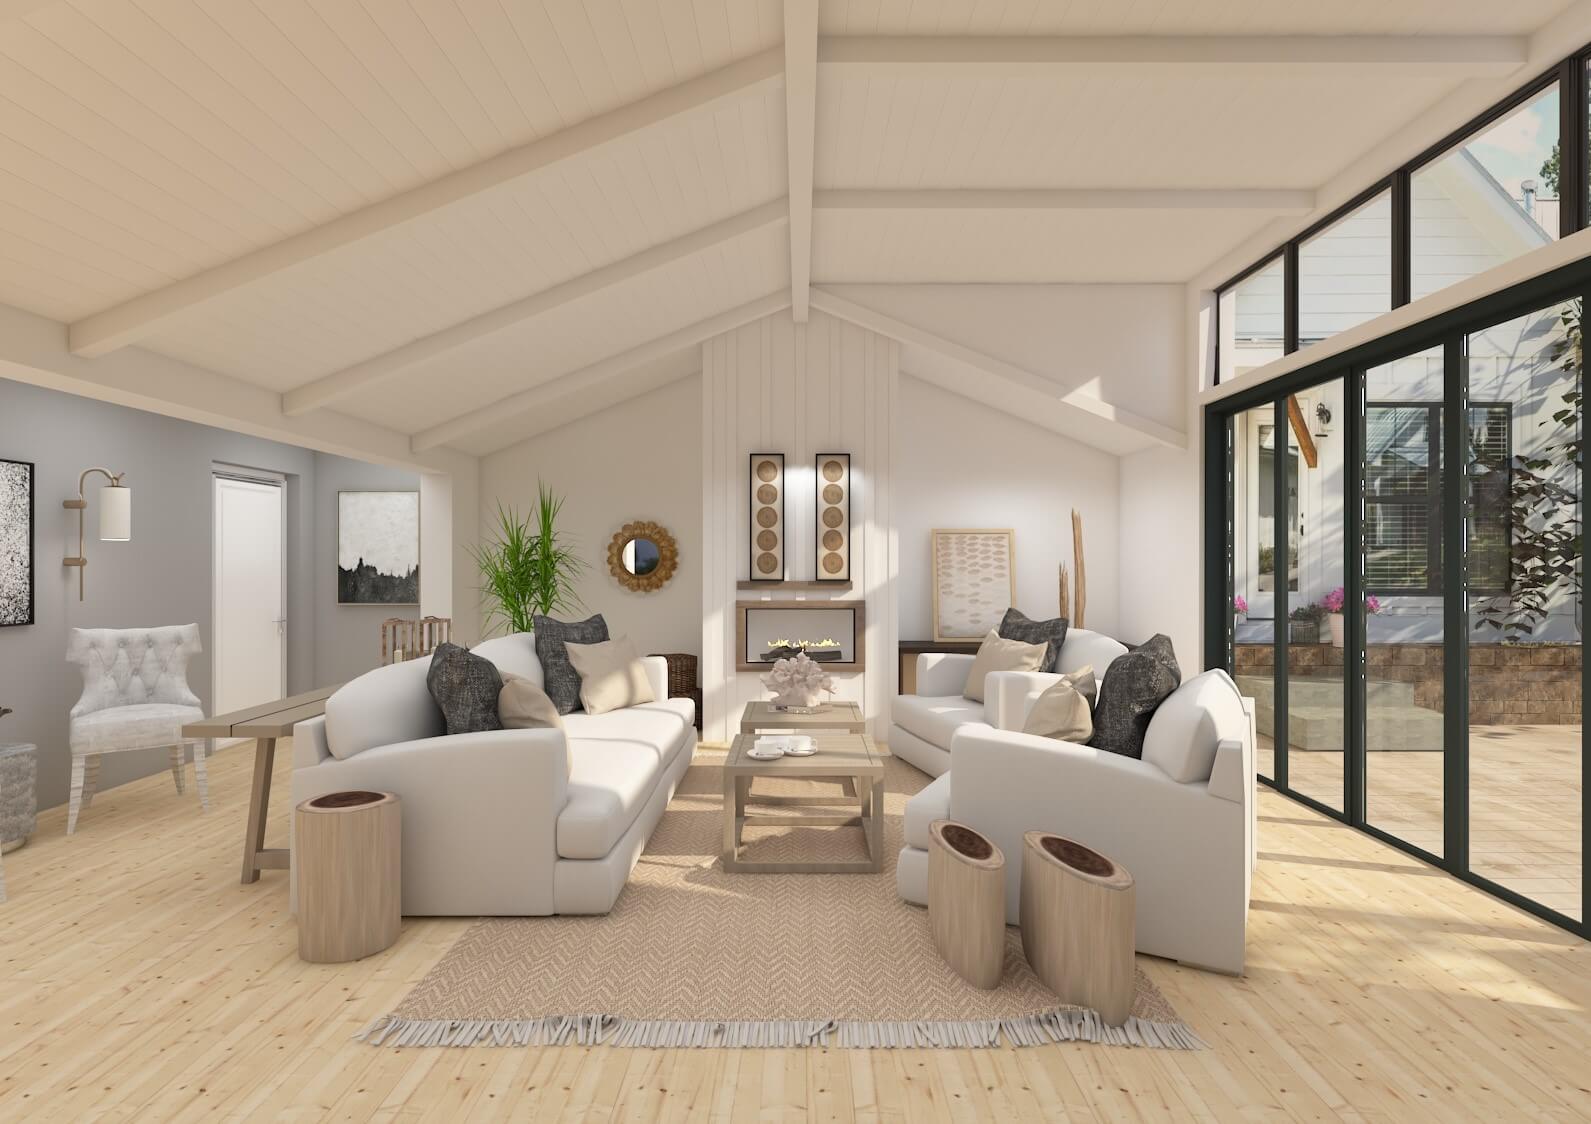 100 Modern Living Room Design Ideas 2023 Home Interior Design| Living Room  Wall Decorating Ideas P8 - YouTube